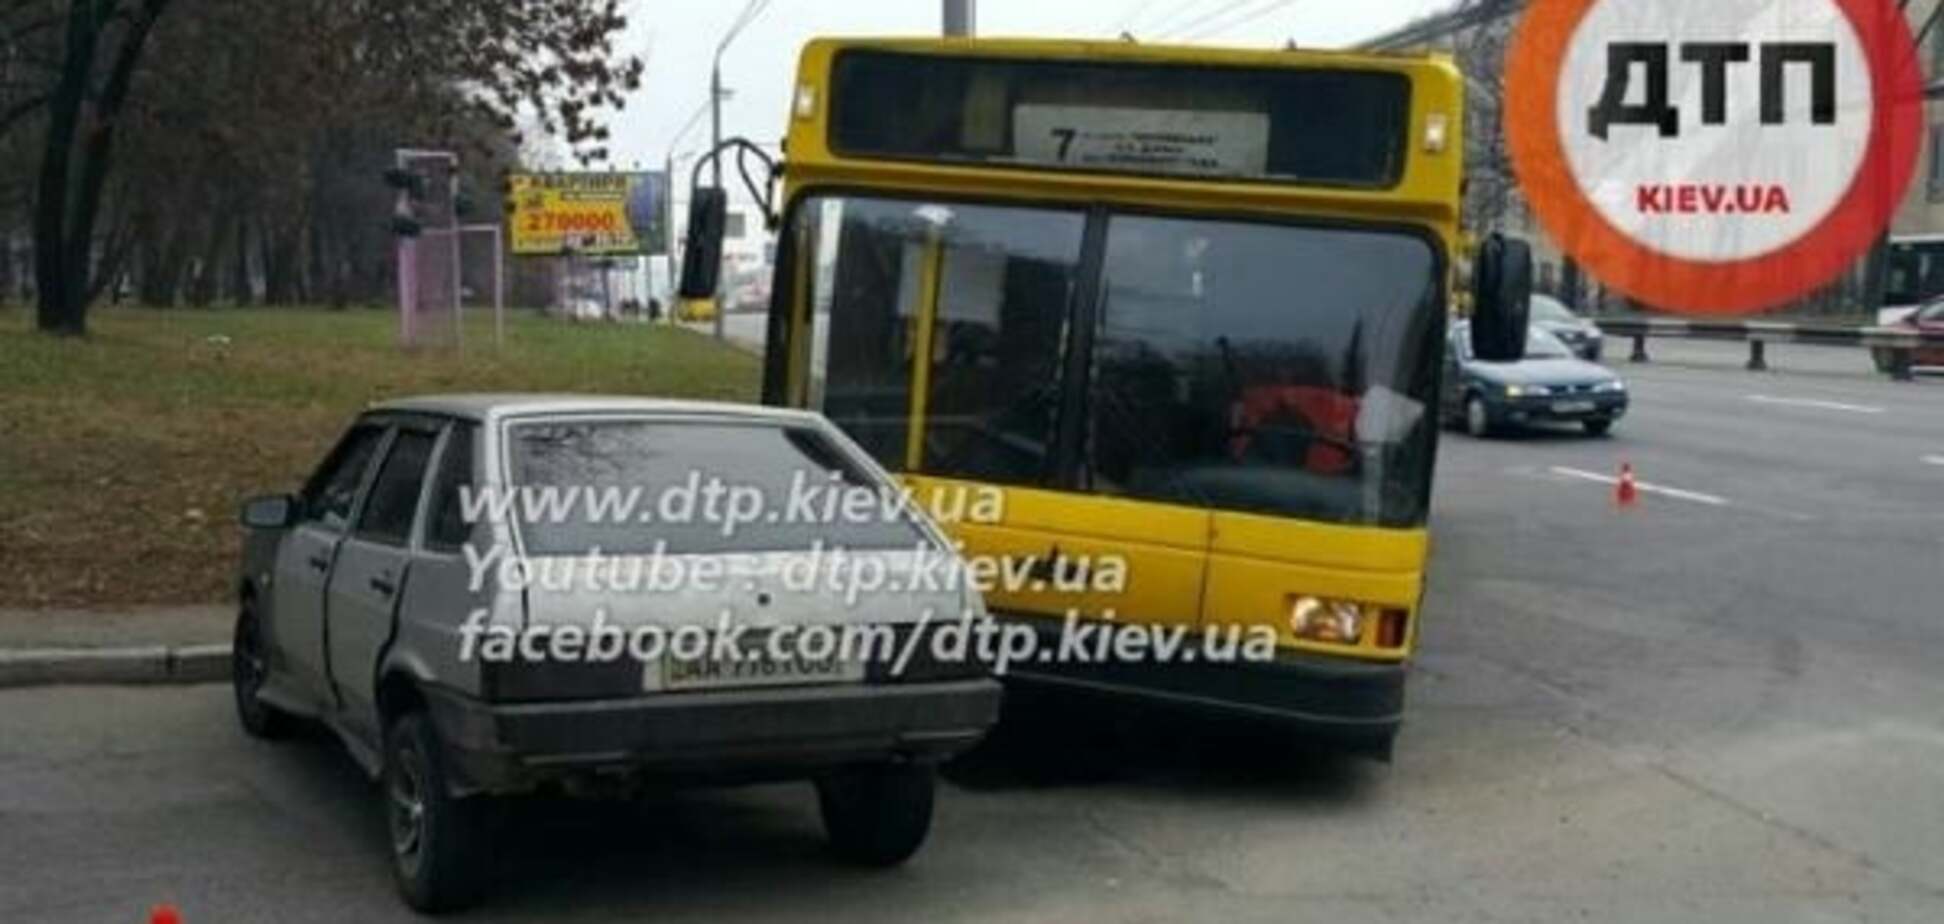 Вот, новый поворот: в Киеве ВАЗ столкнулся с троллейбусом